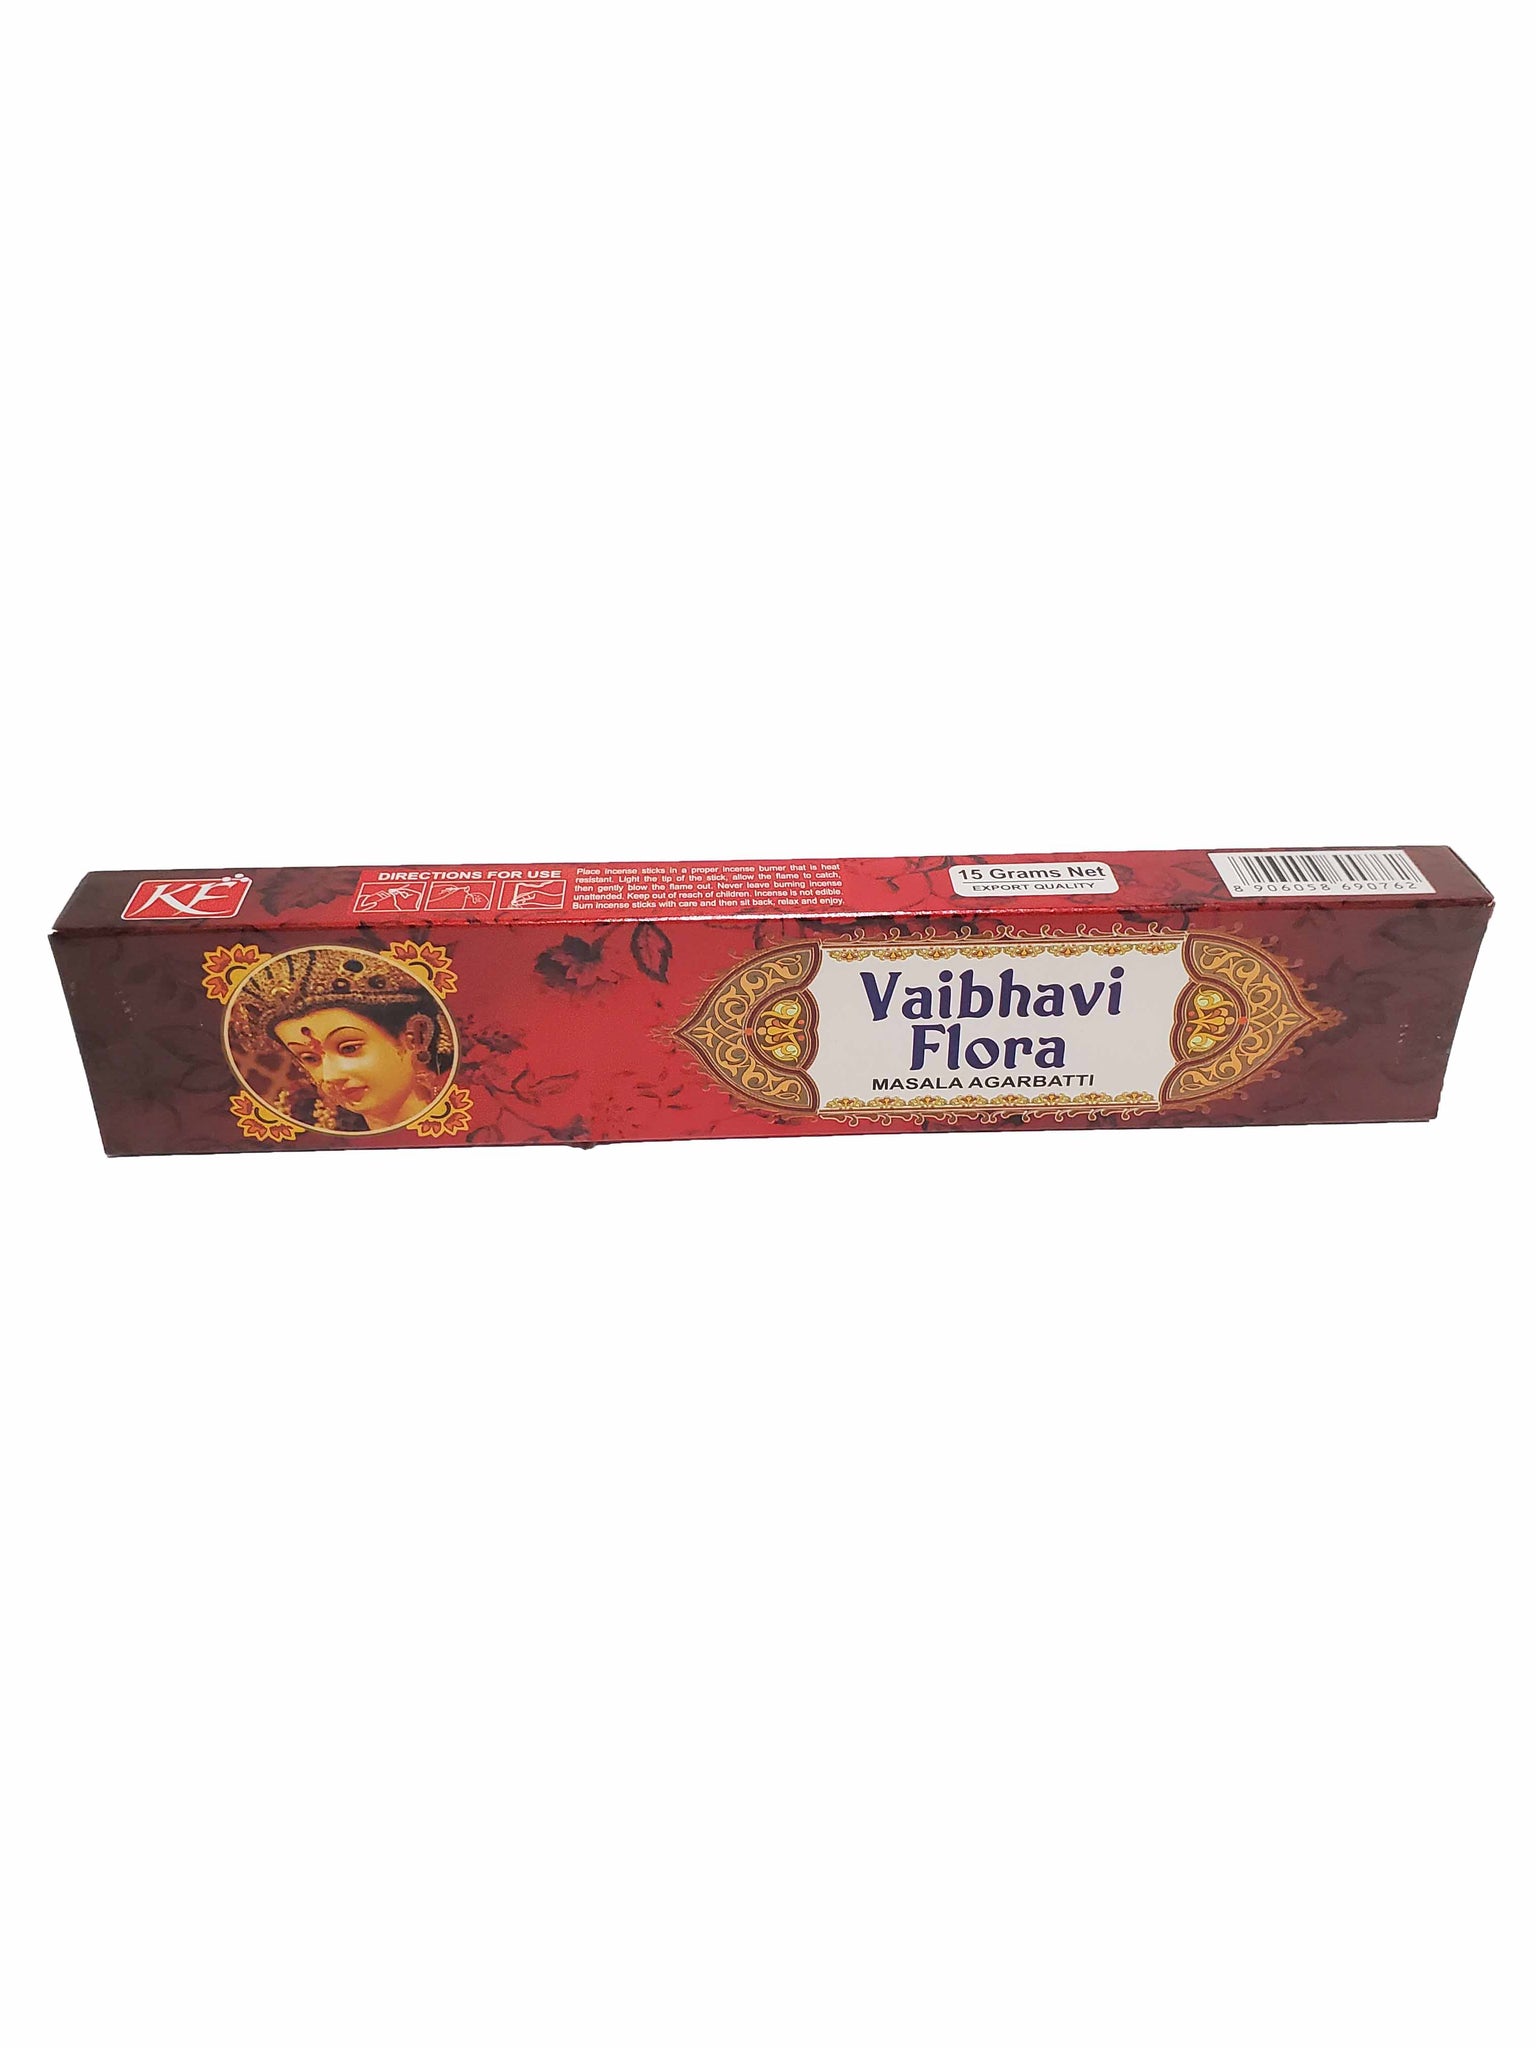 Vaibhavi Flora Incense